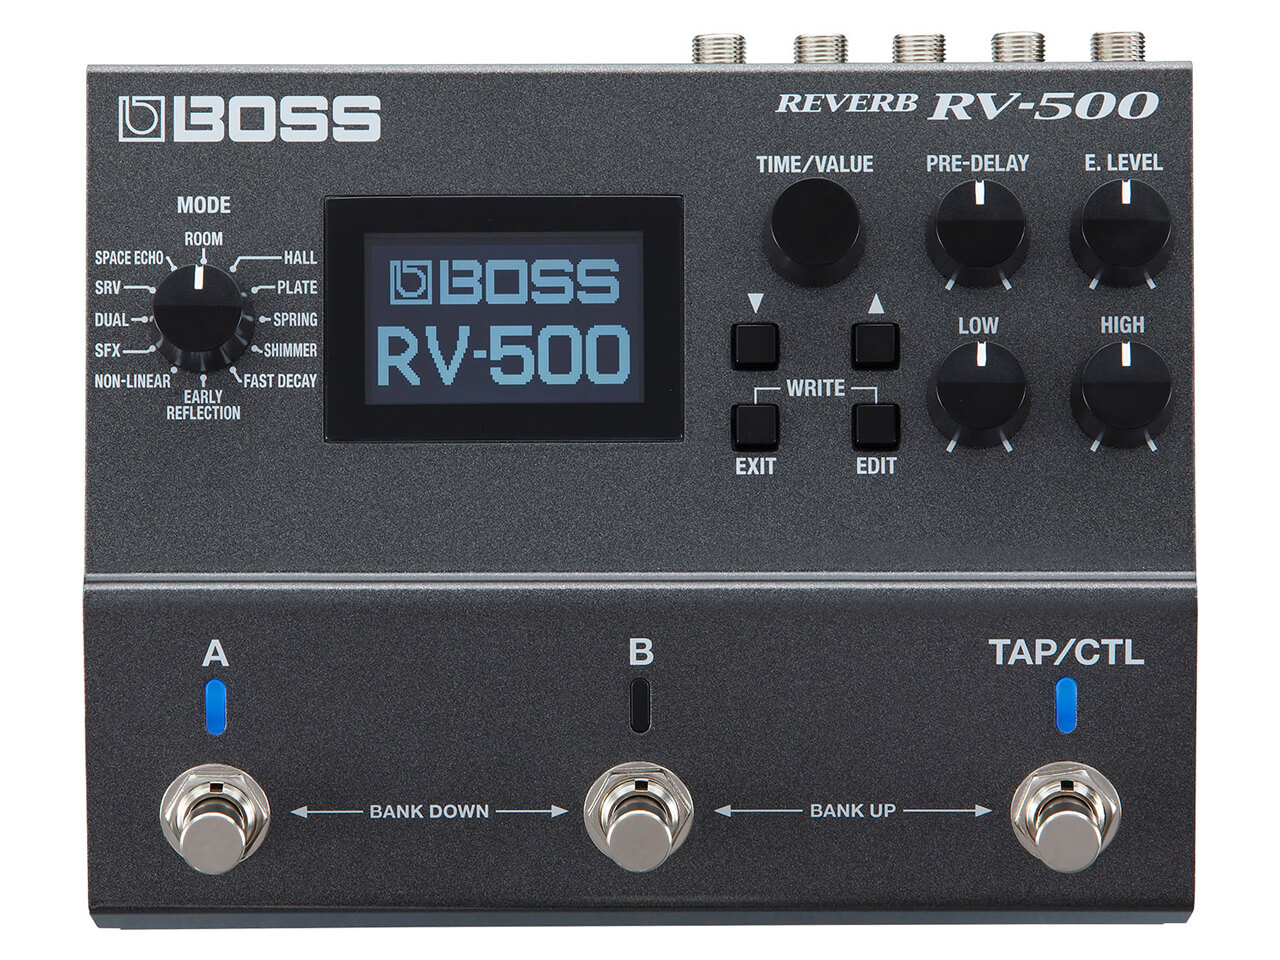 BOSS RV-500 REVERB